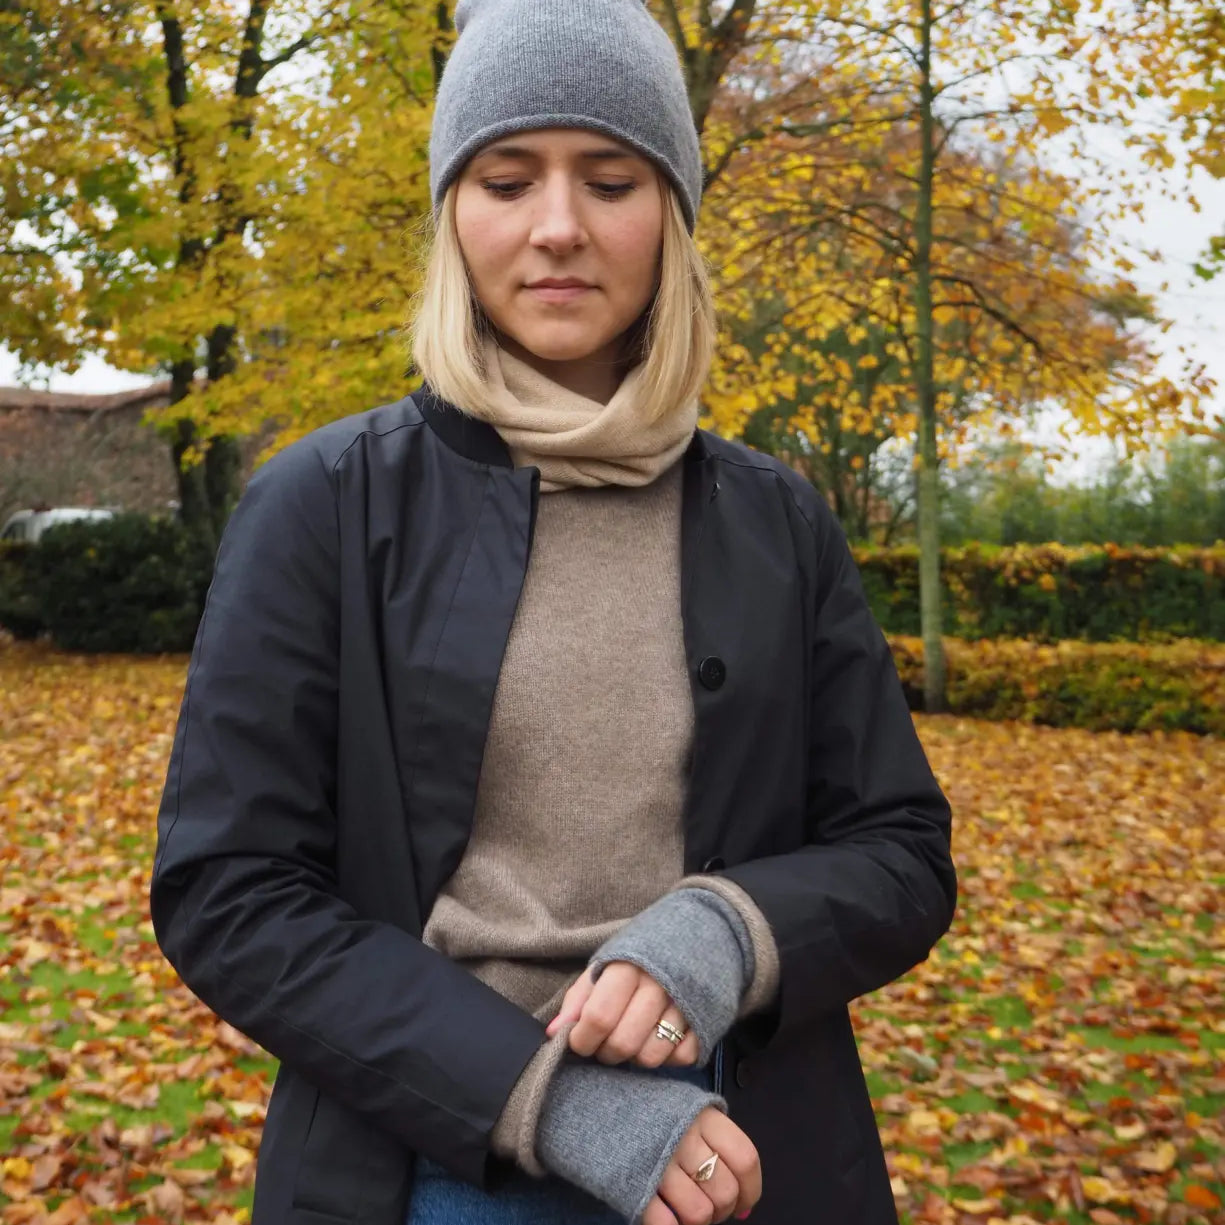 Miljøbillede af grå cashmere handsker på en kvinde